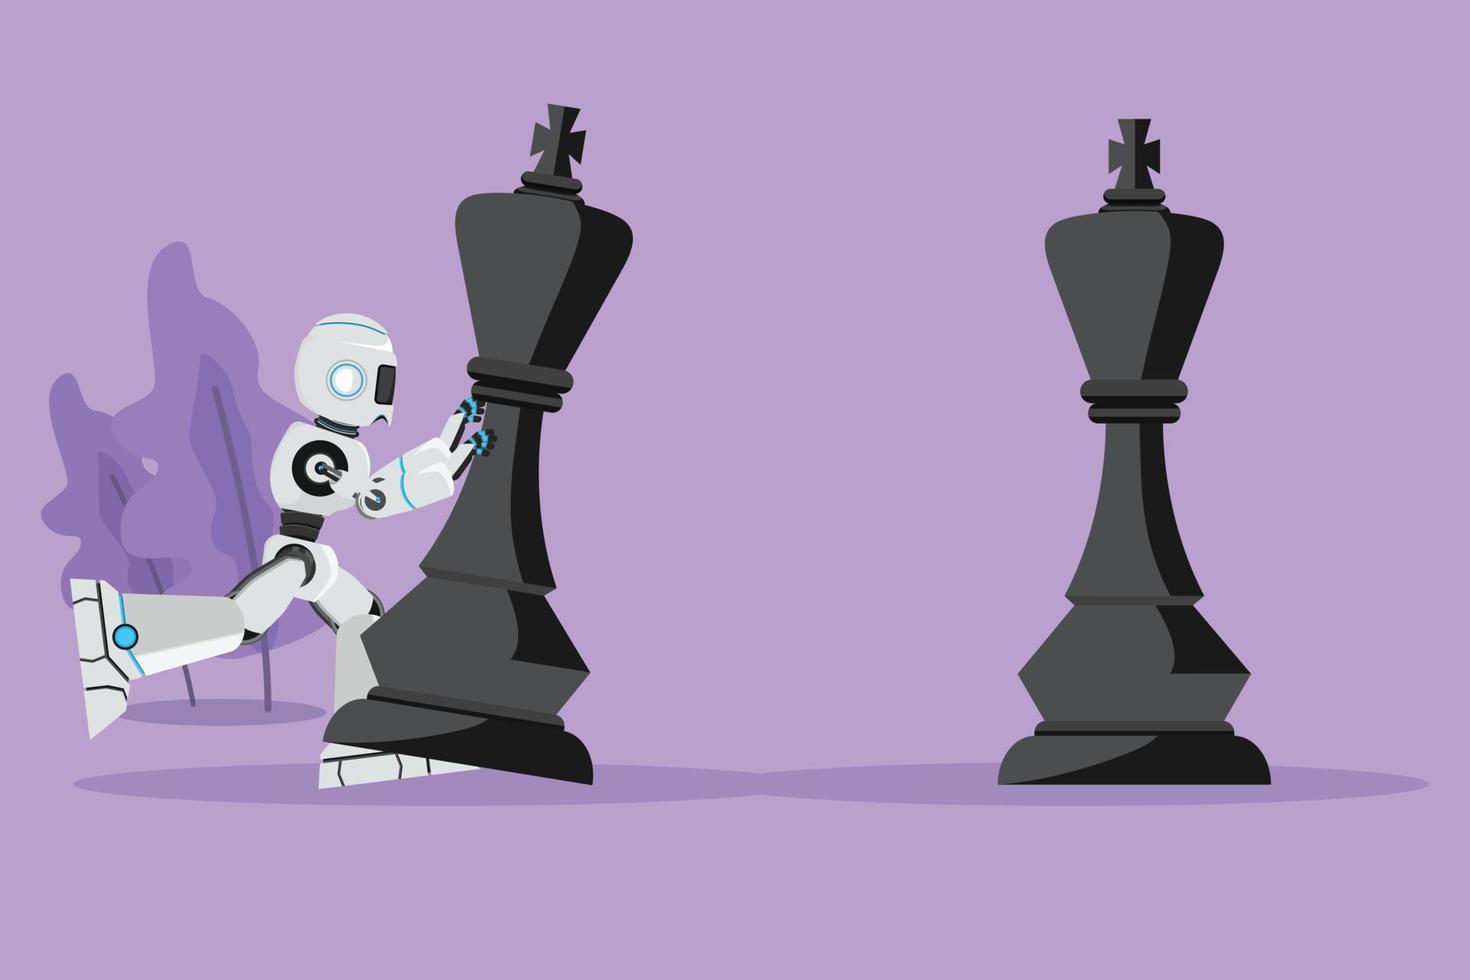 O robô de desenho de estilo plano dos desenhos animados empurra grandes peças de xadrez do rei para derrotar o rei oponente. movimento estratégico. inteligência artificial robótica. indústria de tecnologia. ilustração em vetor design gráfico desenhar